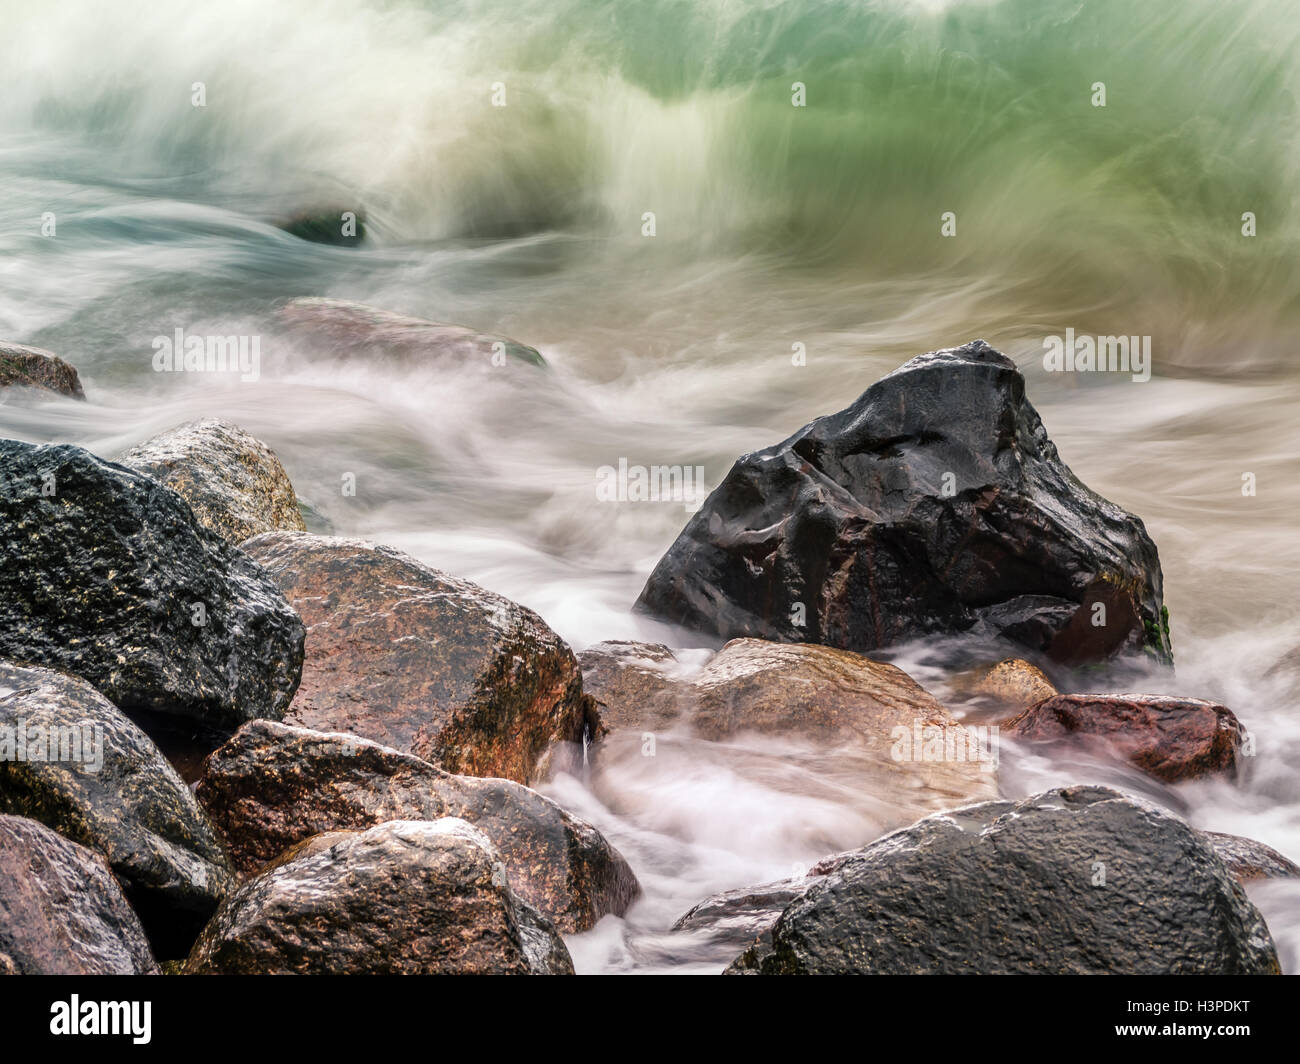 Rocky seashore with stormy sea waves Stock Photo